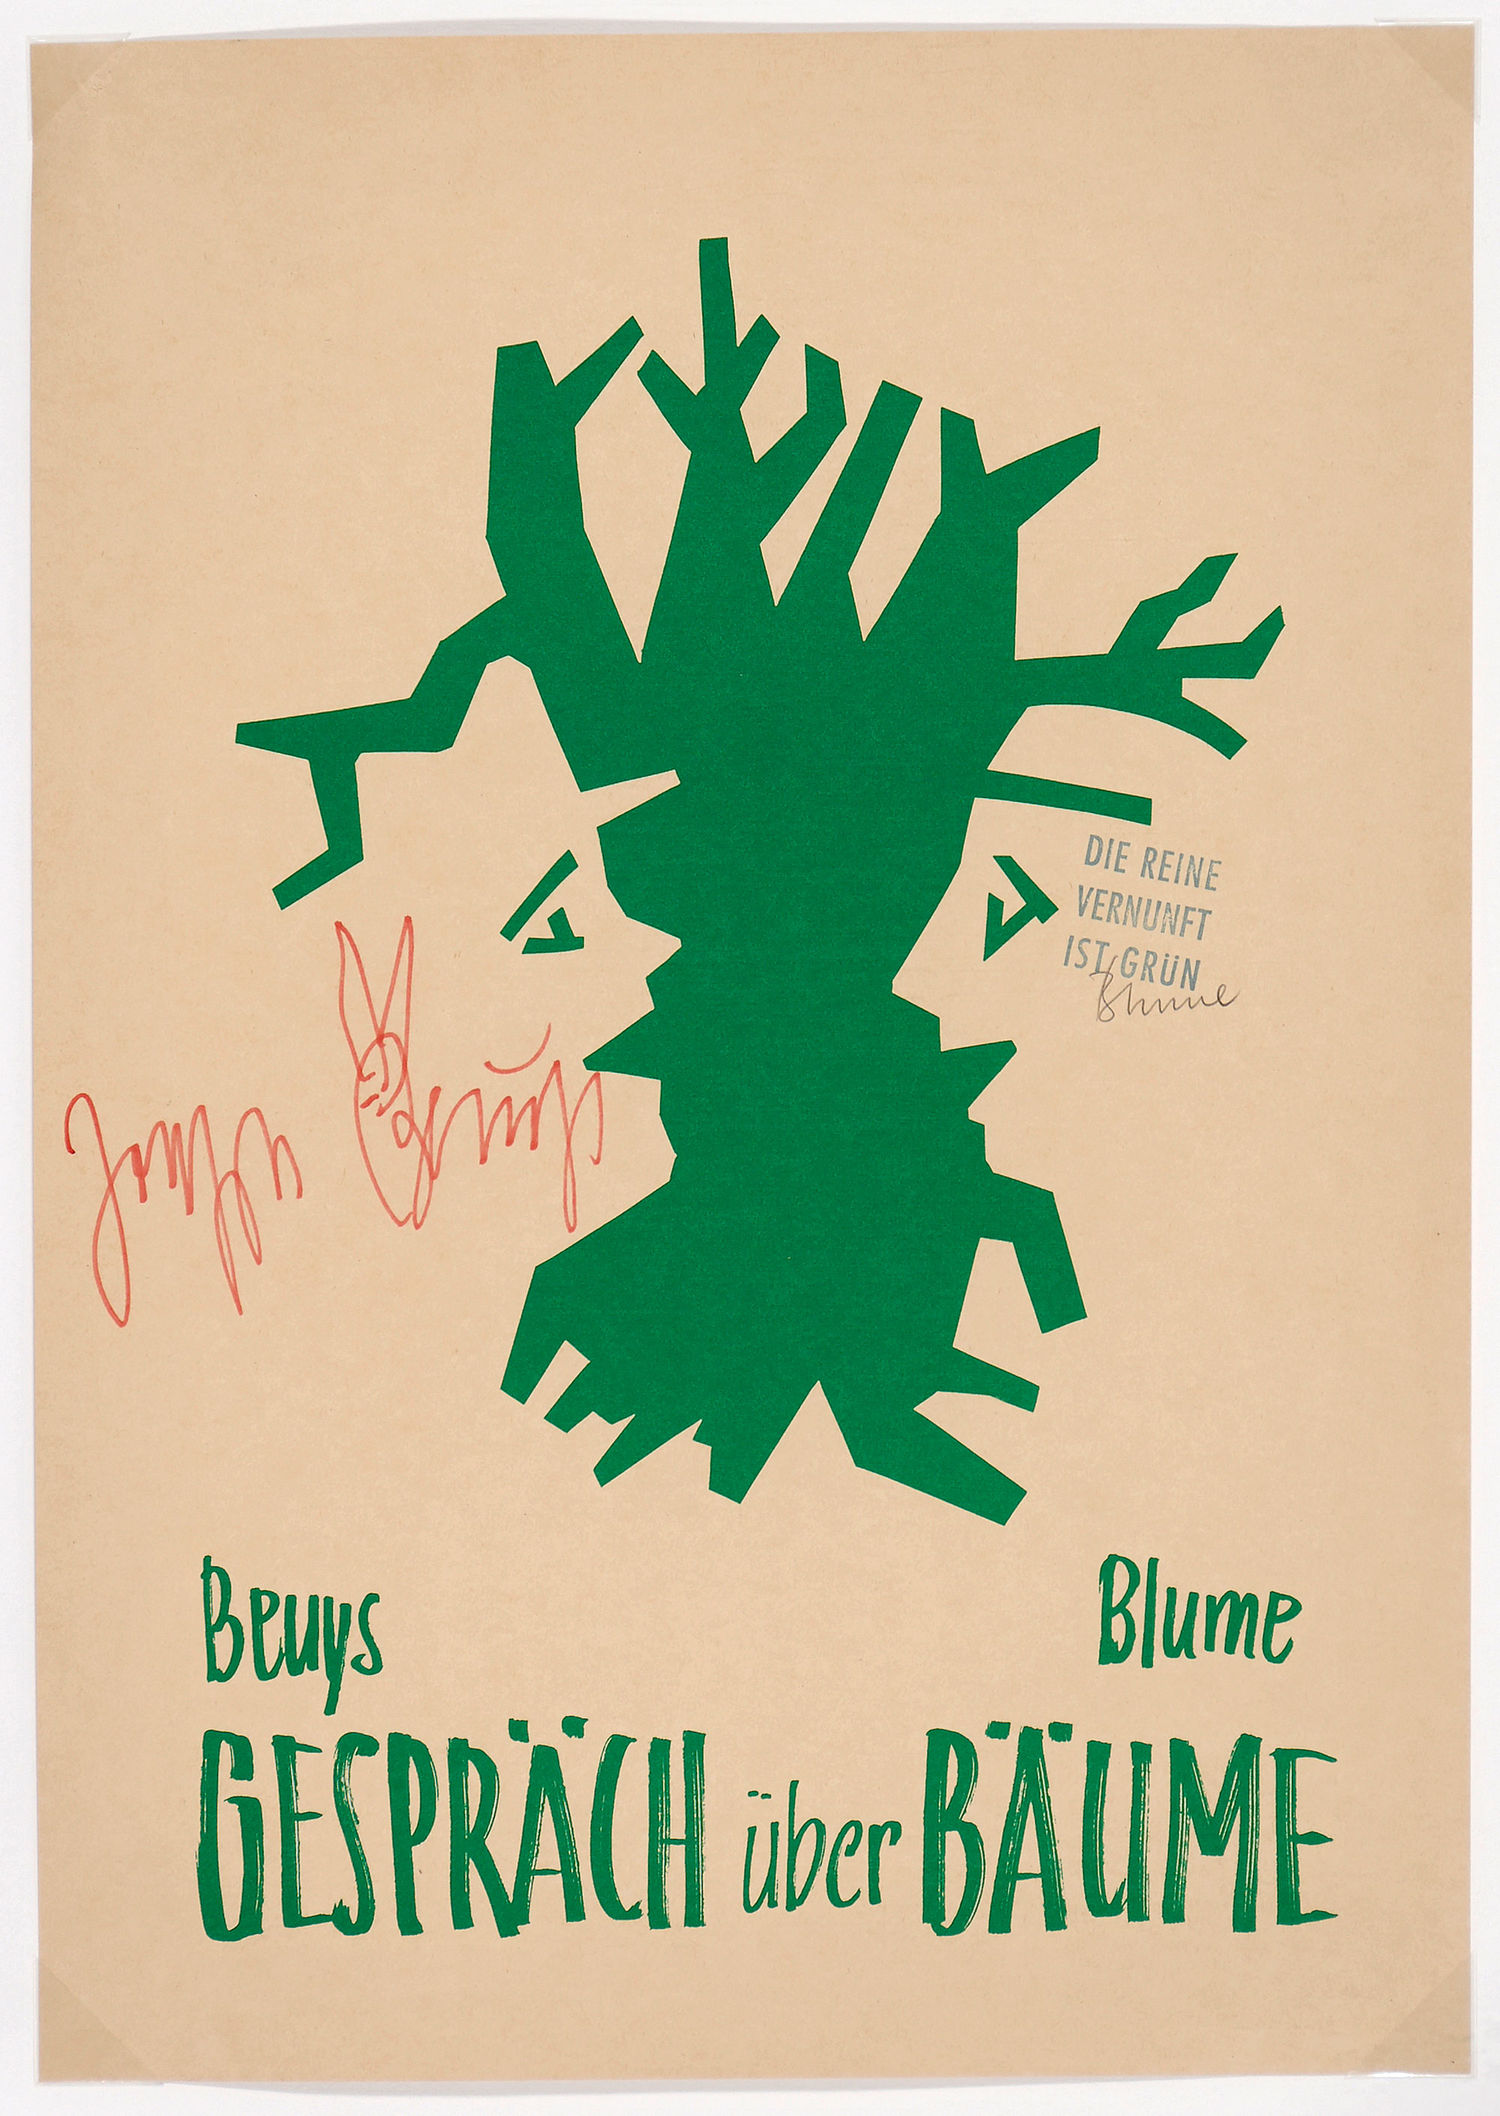 Beuys-Blume, GESPRÄCH über BÄUME 1982 Galerie Magers, Bonn Offsetdruck in grün nach einer Zeichnung von Johannes Blume, signiert von Beuys und von Blume, mit Stempelabdruck „DIE REINE VERNUNFT IST GRÜN“. Foto: Museum Wiesbaden / Ed Restle © VG-Bild Kunst, Bonn 2021